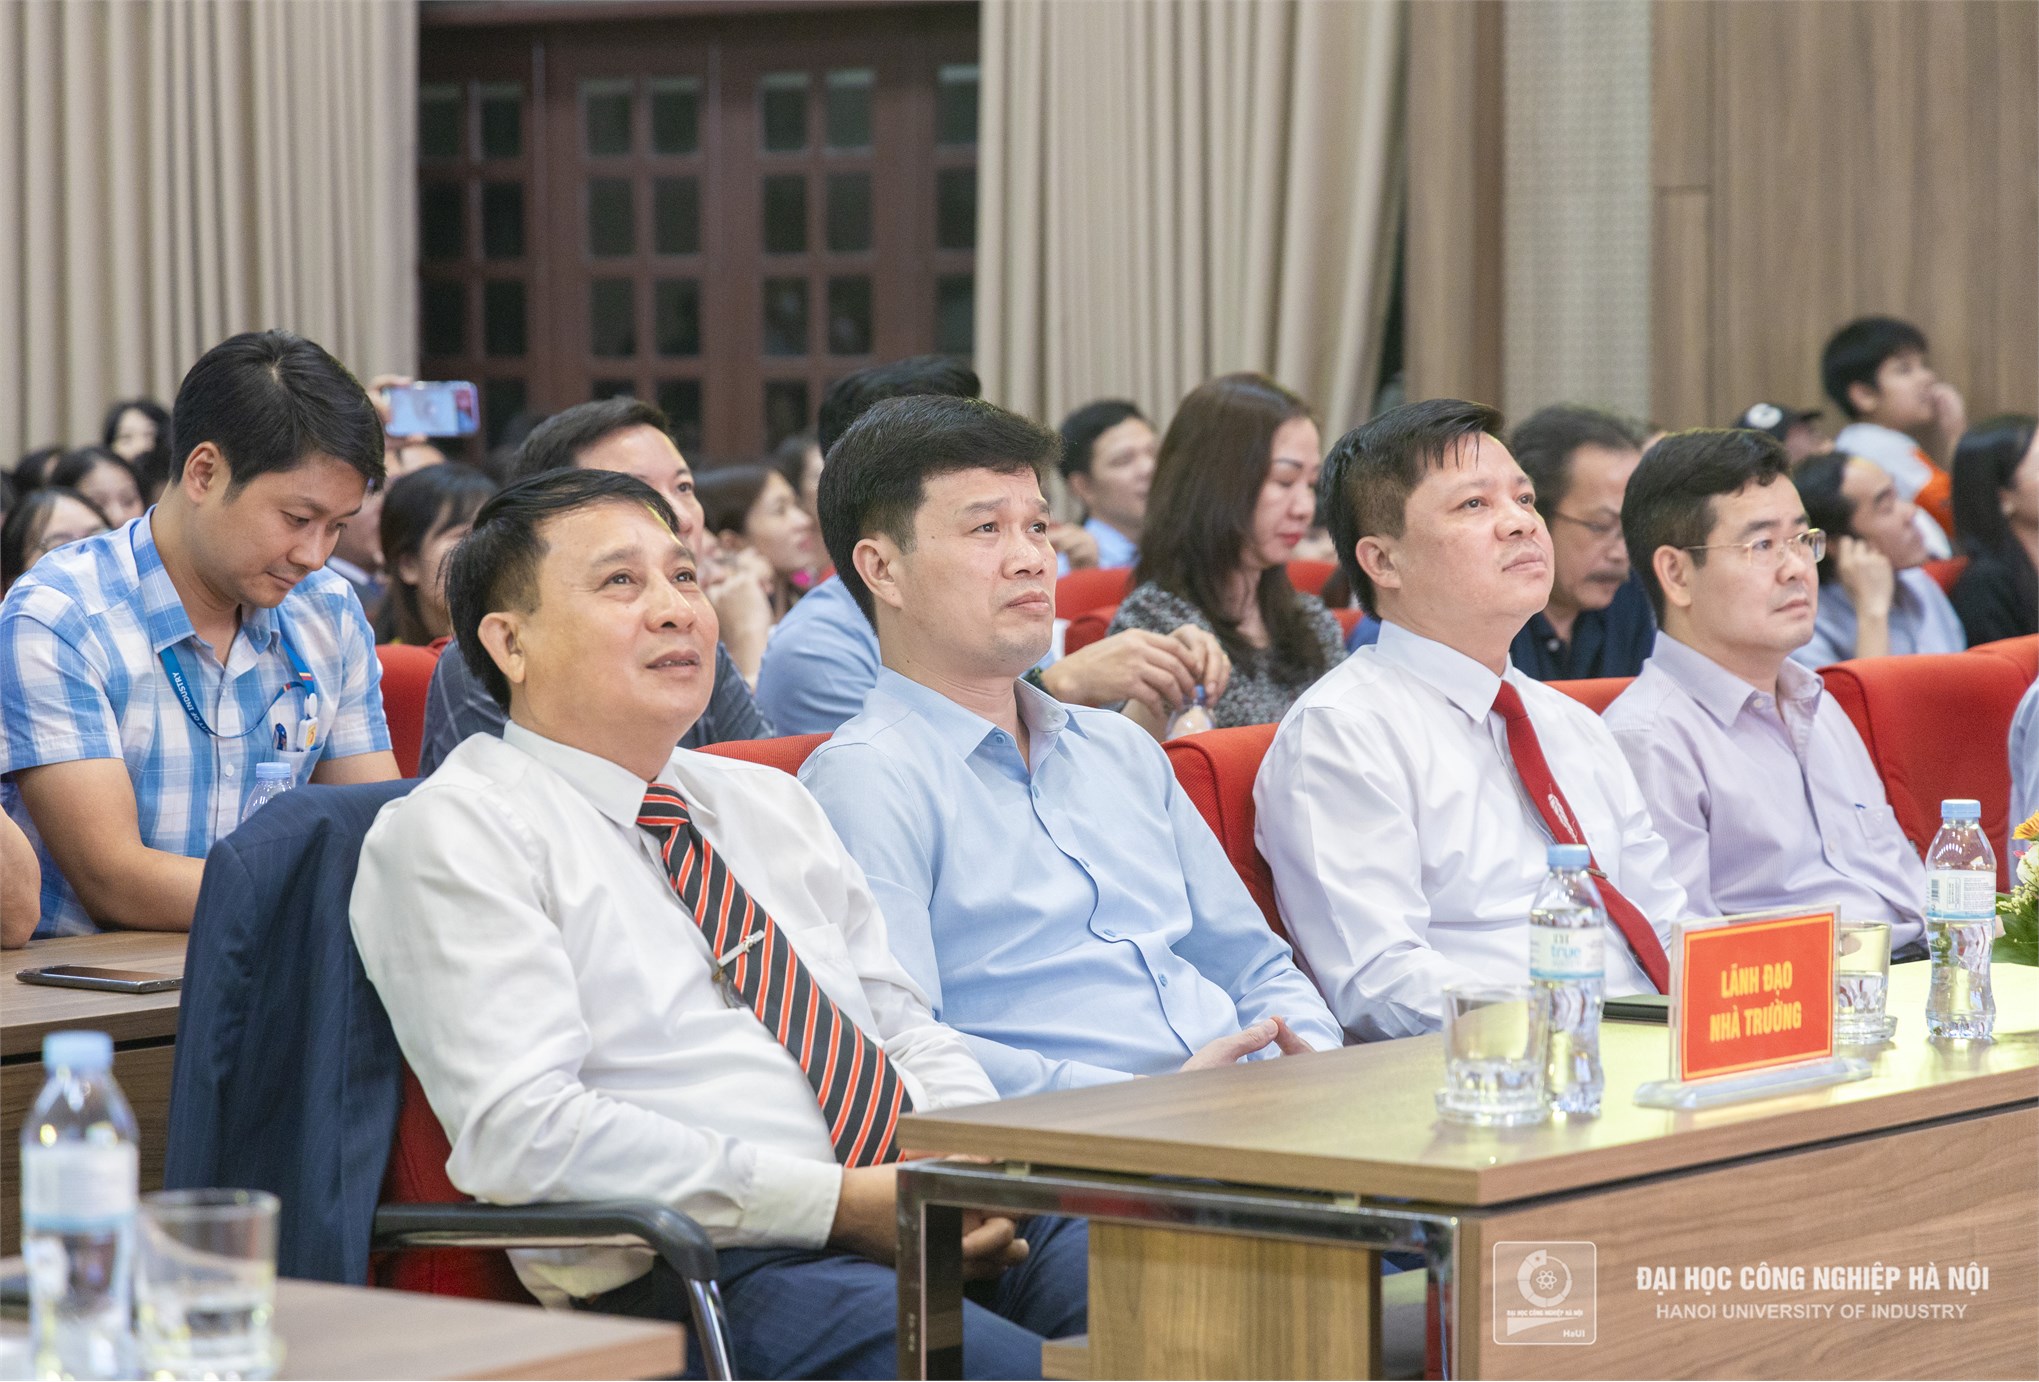 Đội liên quân có Khoa Lý luận Chính trị - Pháp luật vinh dự đạt giải nhì cuộc thi Học tập, làm theo tư tưởng, đạo đức, phong cách Hồ Chí Minh Haui 2023